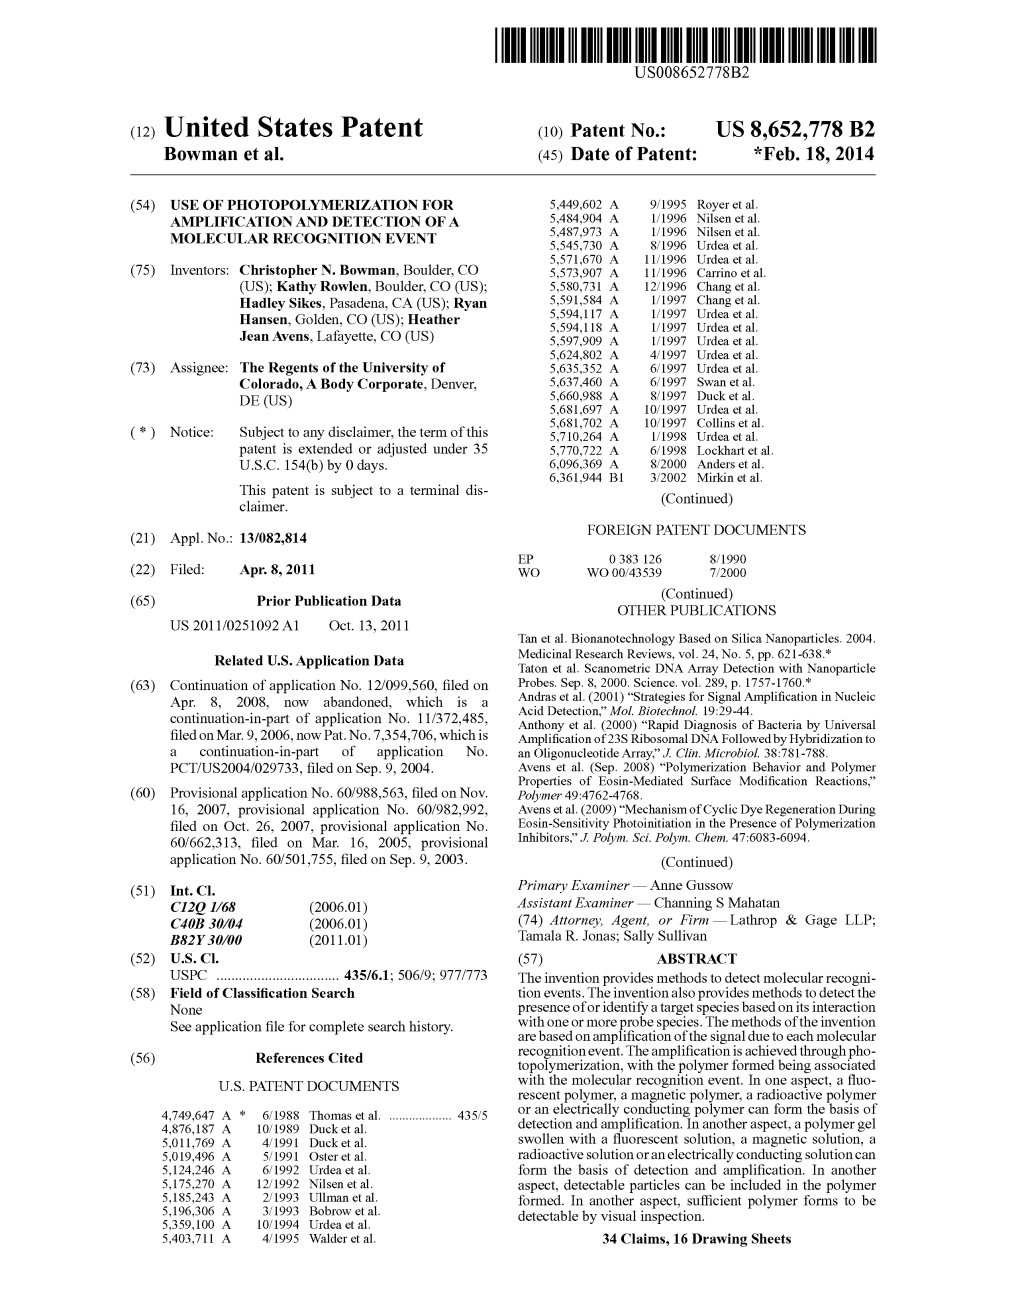 (12) United States Patent (10) Patent No.: US 8,652,778 B2 Bowman Et Al